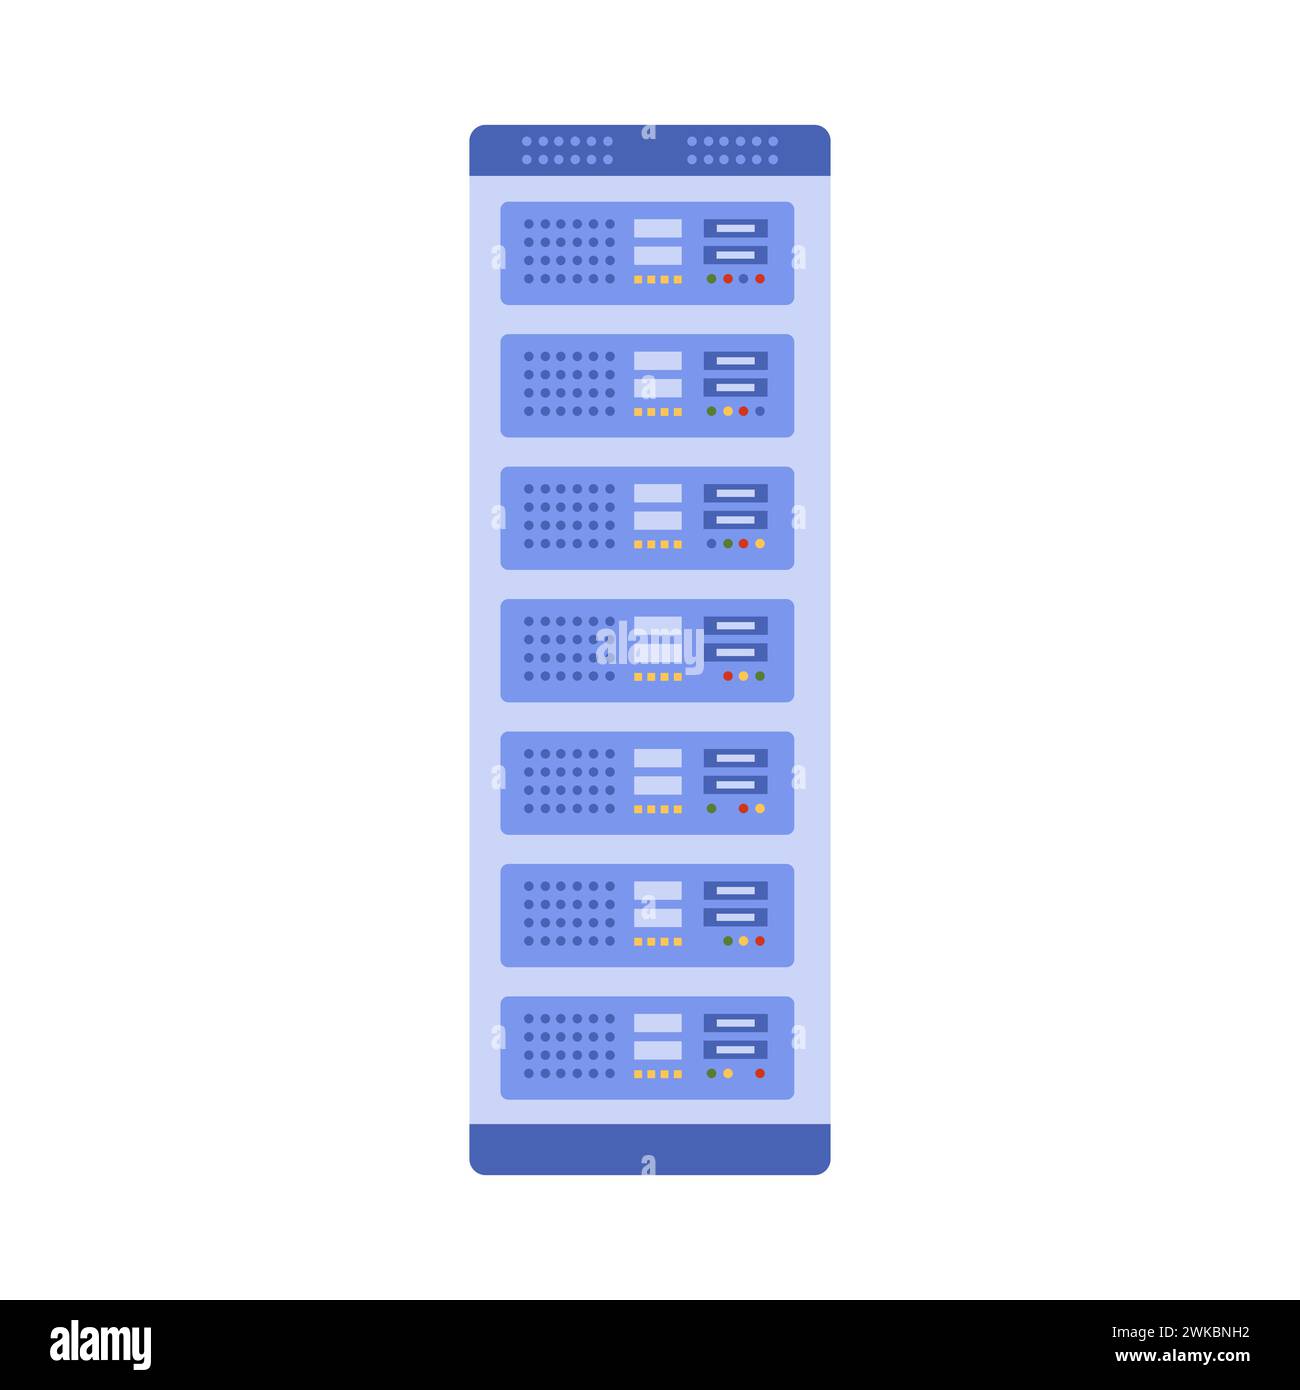 Server rack, data center equipment for information storage vector illustration Stock Vector